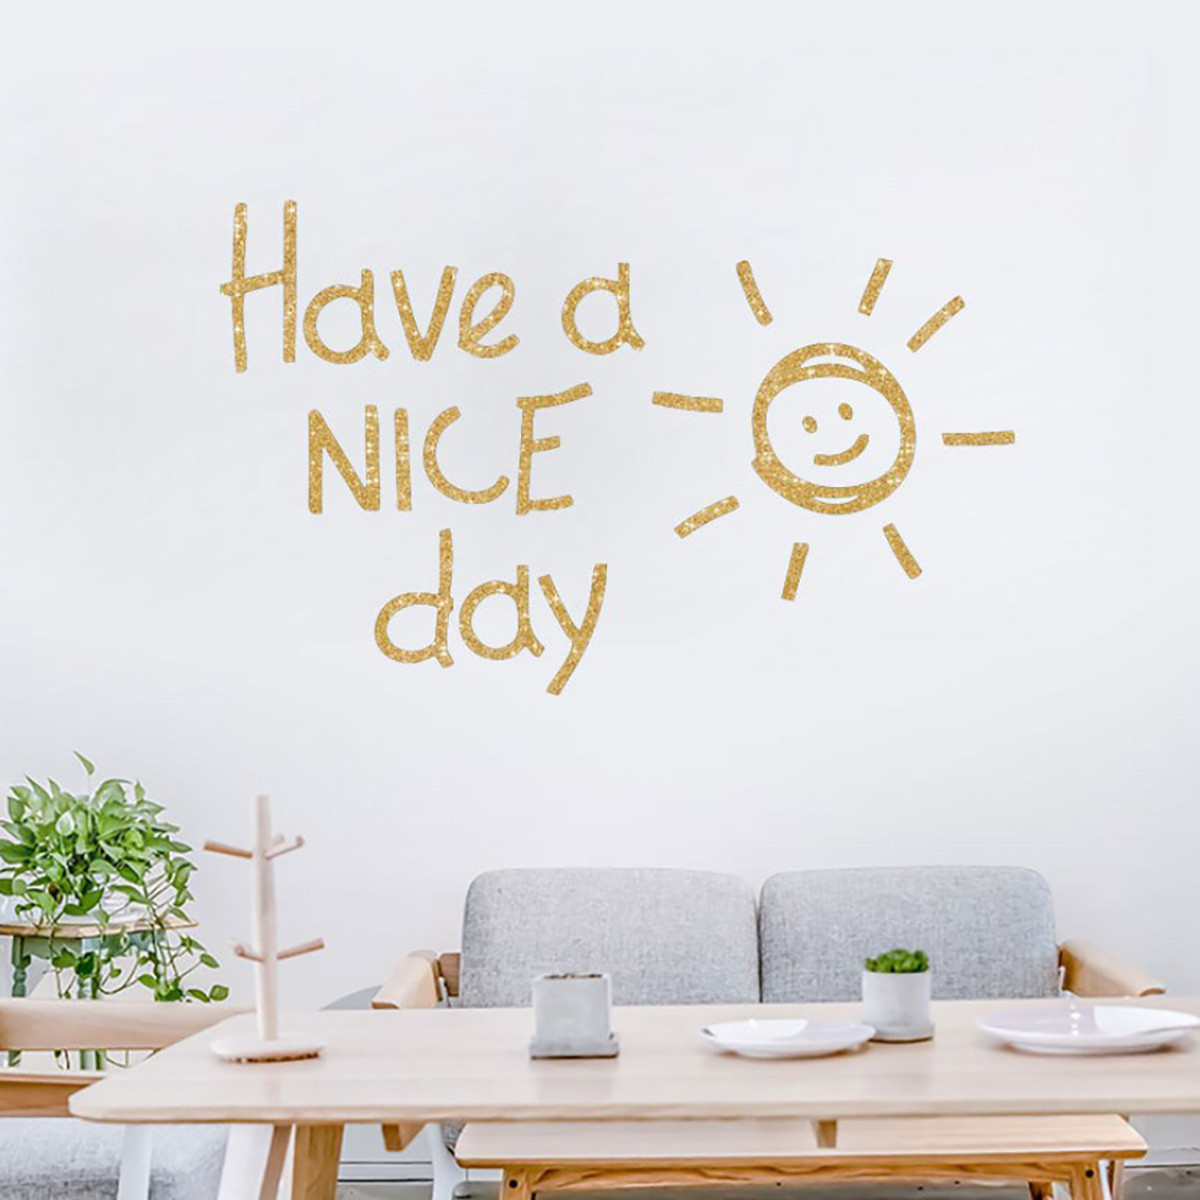 3D інтер'єрні вінілові наклейки на стіни "Хорого дня" із Сонцем Have a nice day 39-25 см Шпалери